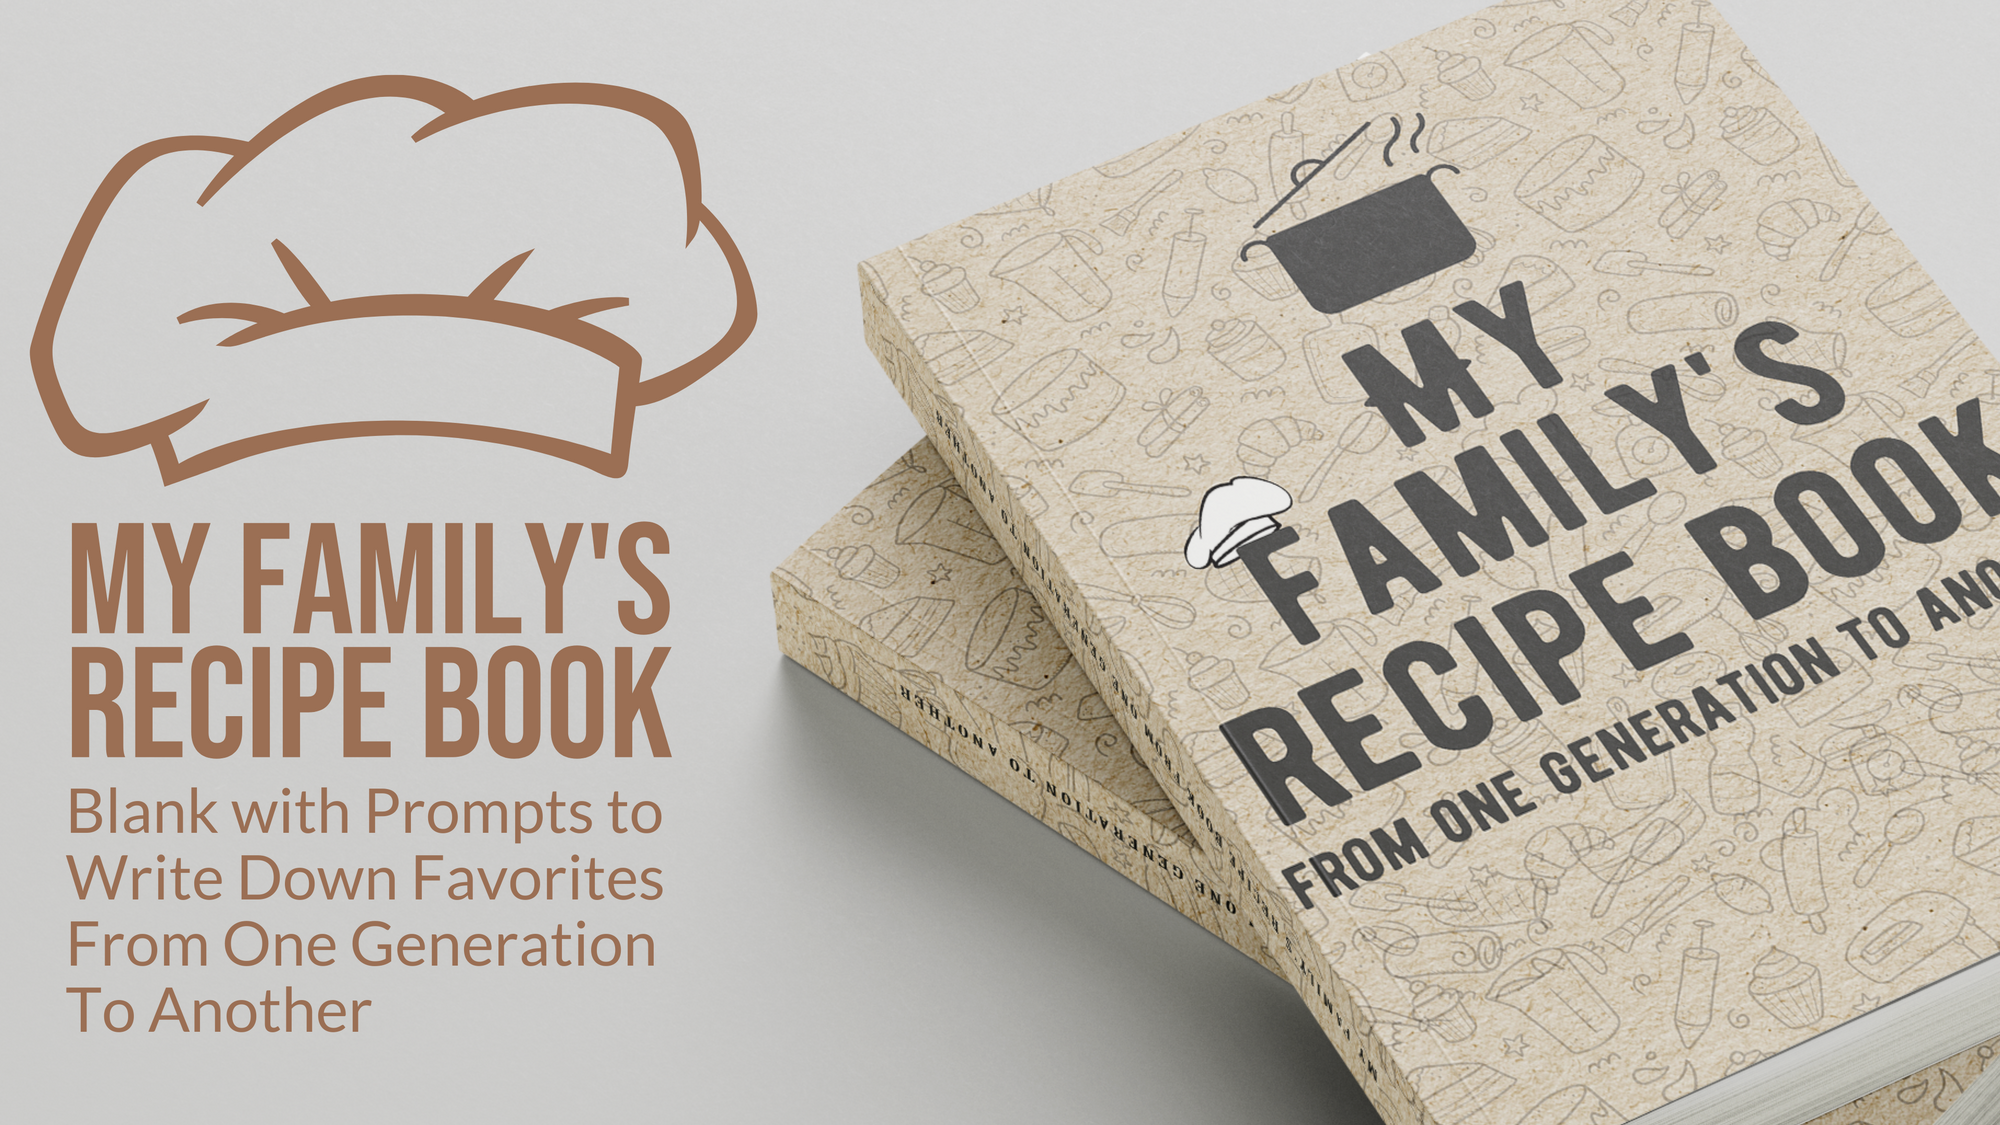 Gorgeous Blank Recipe Book - Fill My Recipe Book